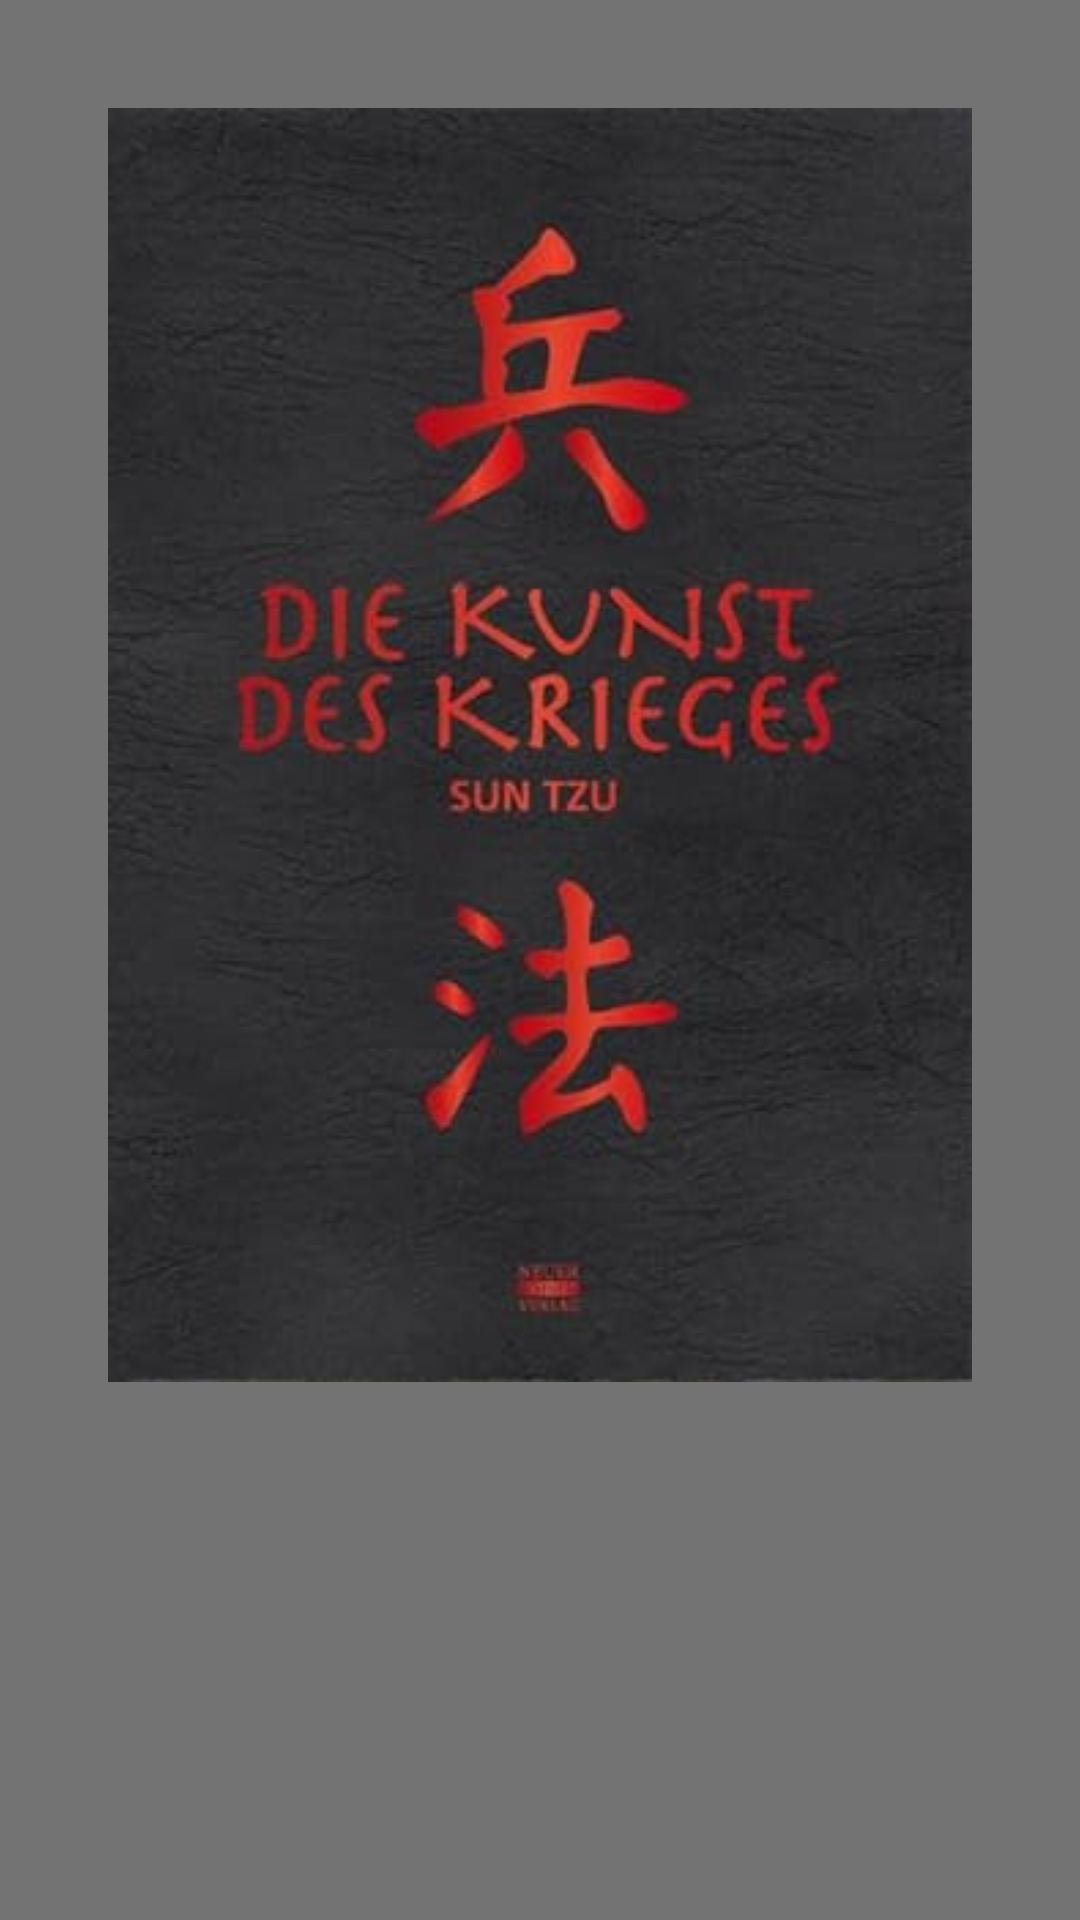 Die Kunst des Krieges Gebundene Ausgabe – 4. September 2017
von Sun Tzu